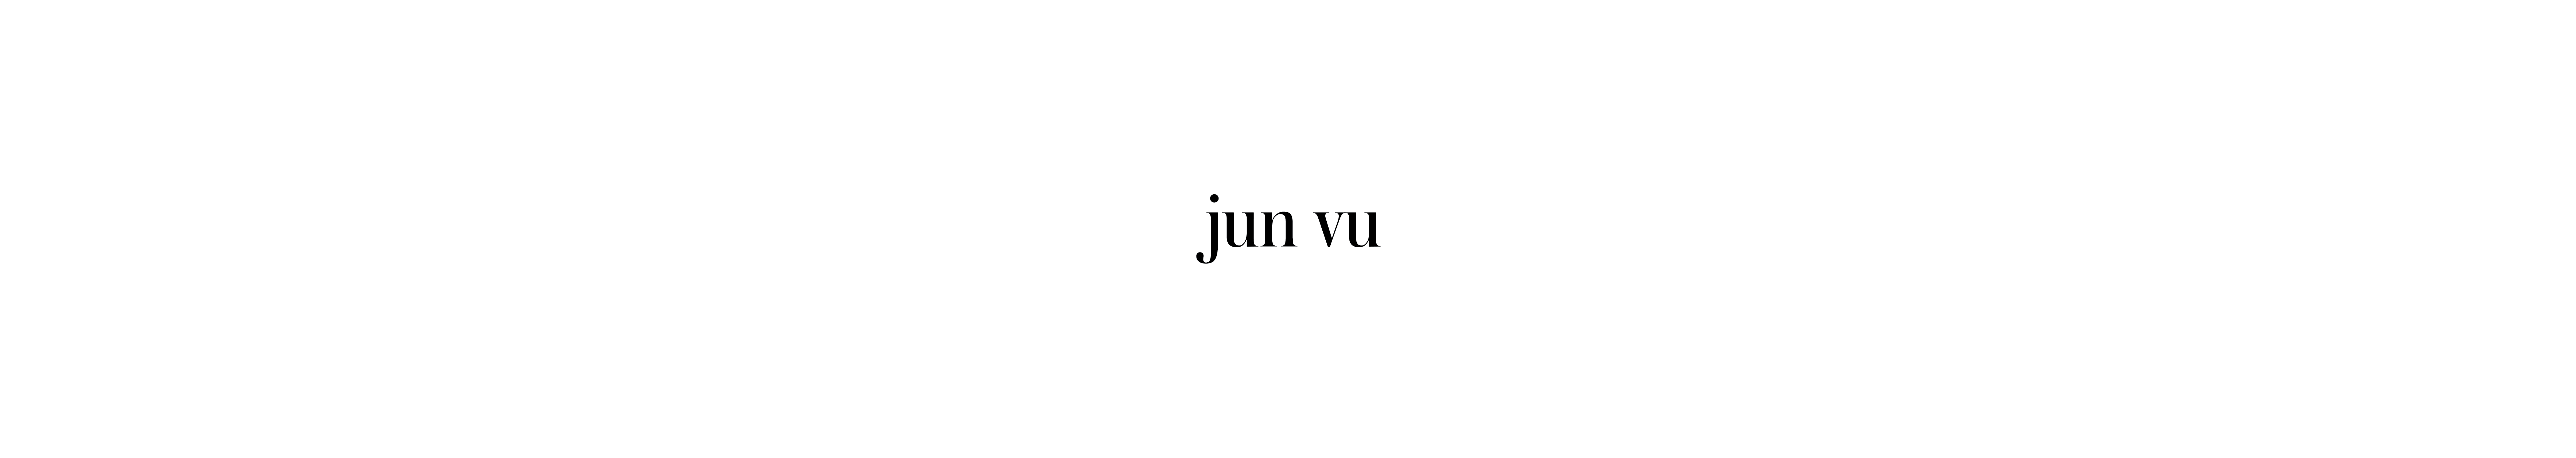 Баннер профиля Jun Vu